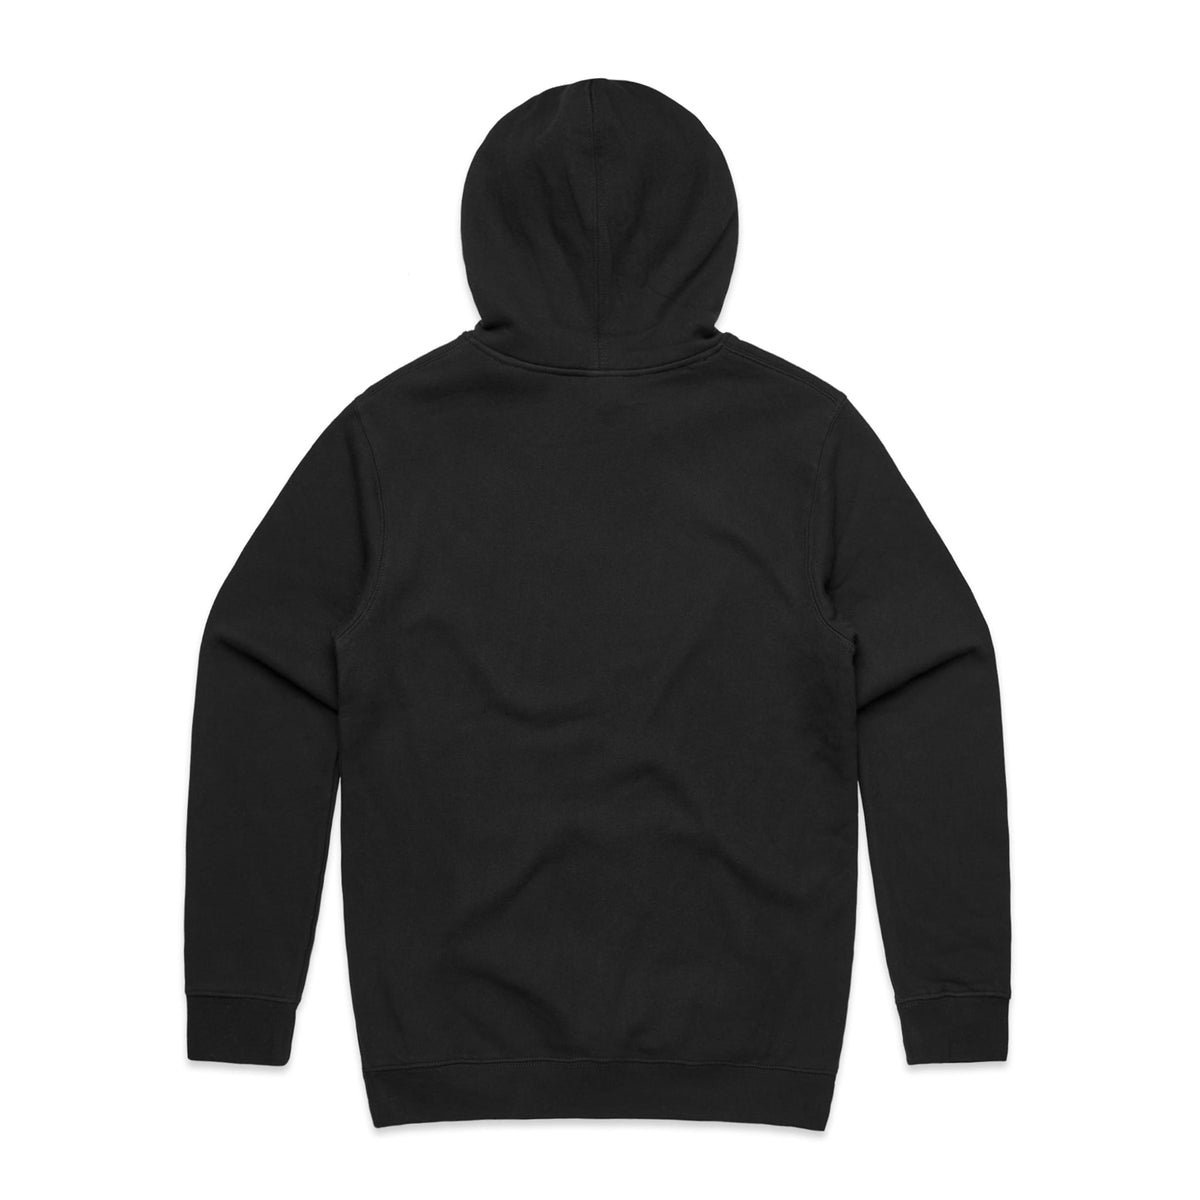 back view of black hoodie